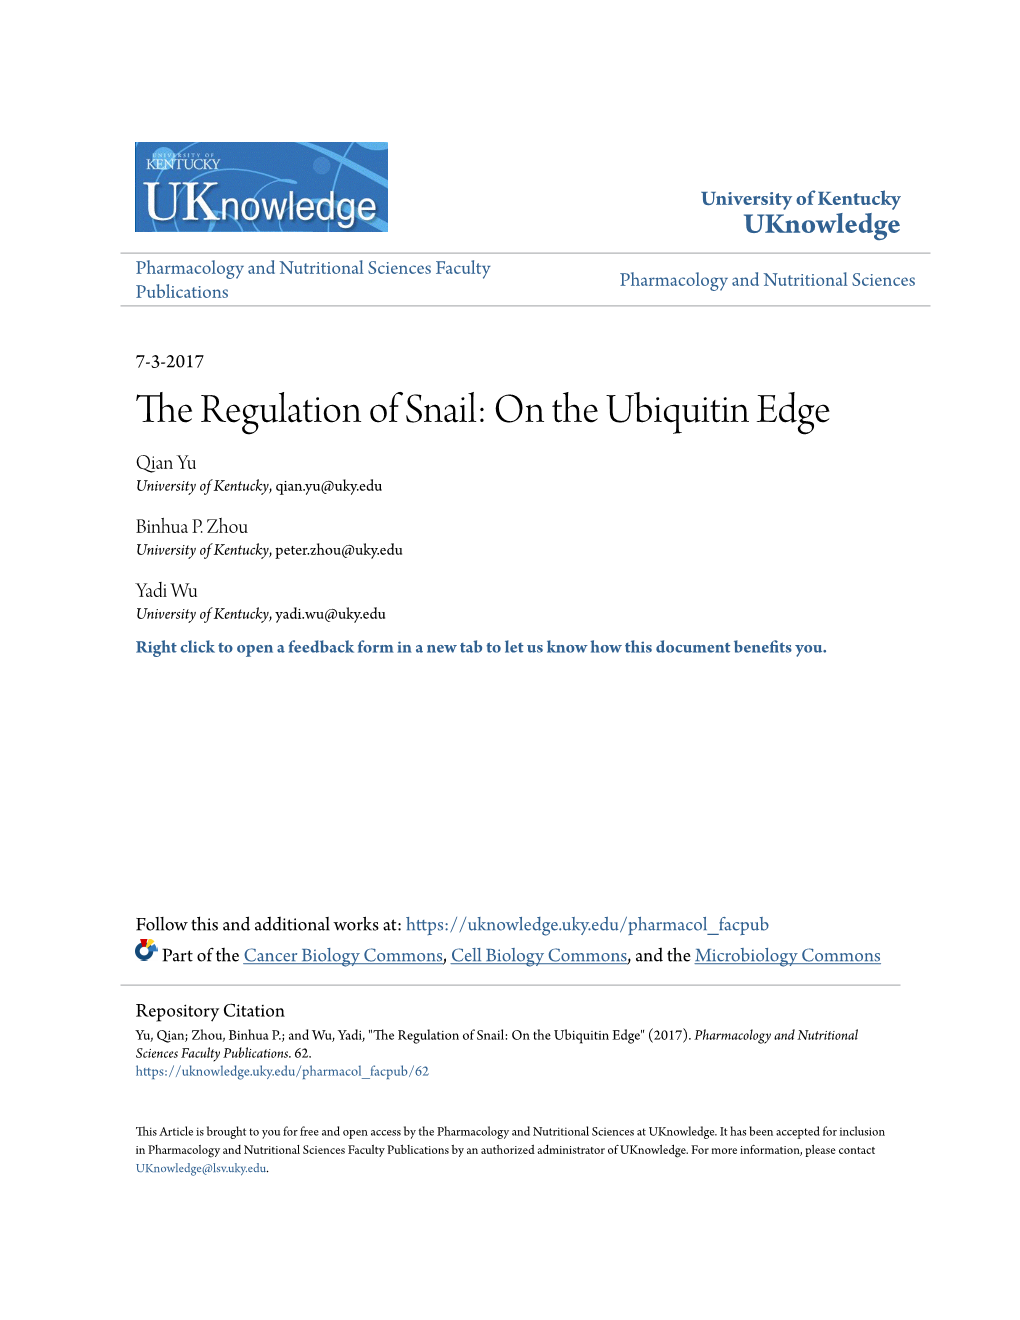 The Regulation of Snail: on the Ubiquitin Edge Qian Yu University of Kentucky, Qian.Yu@Uky.Edu